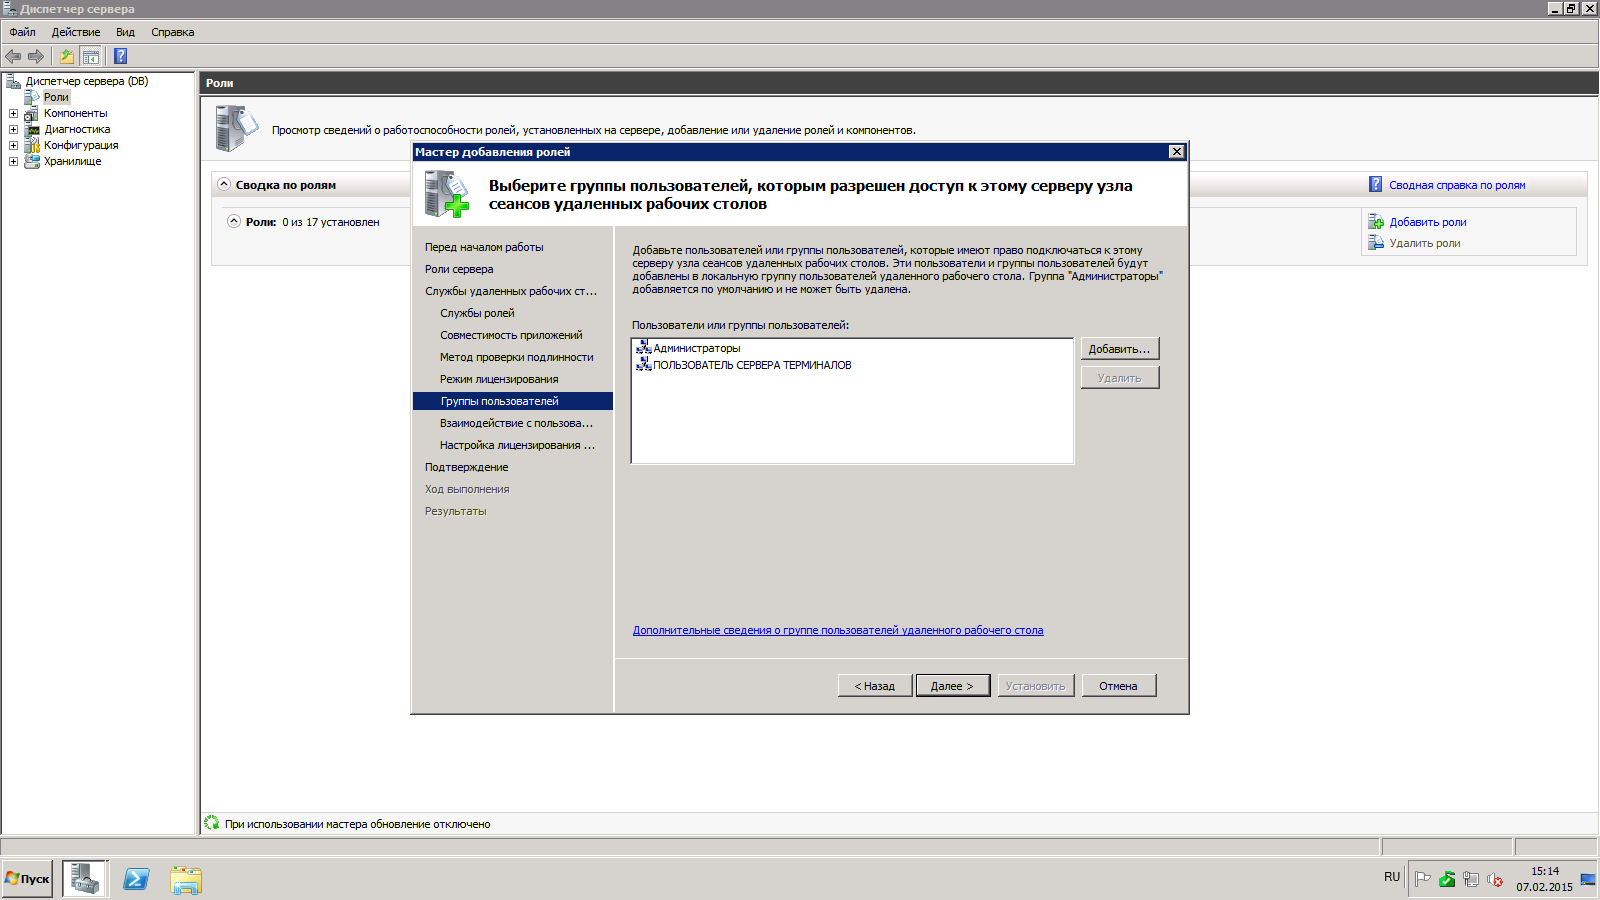 Лицензирование сервера терминалов 2008 r2. Терминальный сервер на Windows 2008 r2. Настройка группы пользователей удаленного рабочего стола. Группа пользователи удаленного рабочего стола.